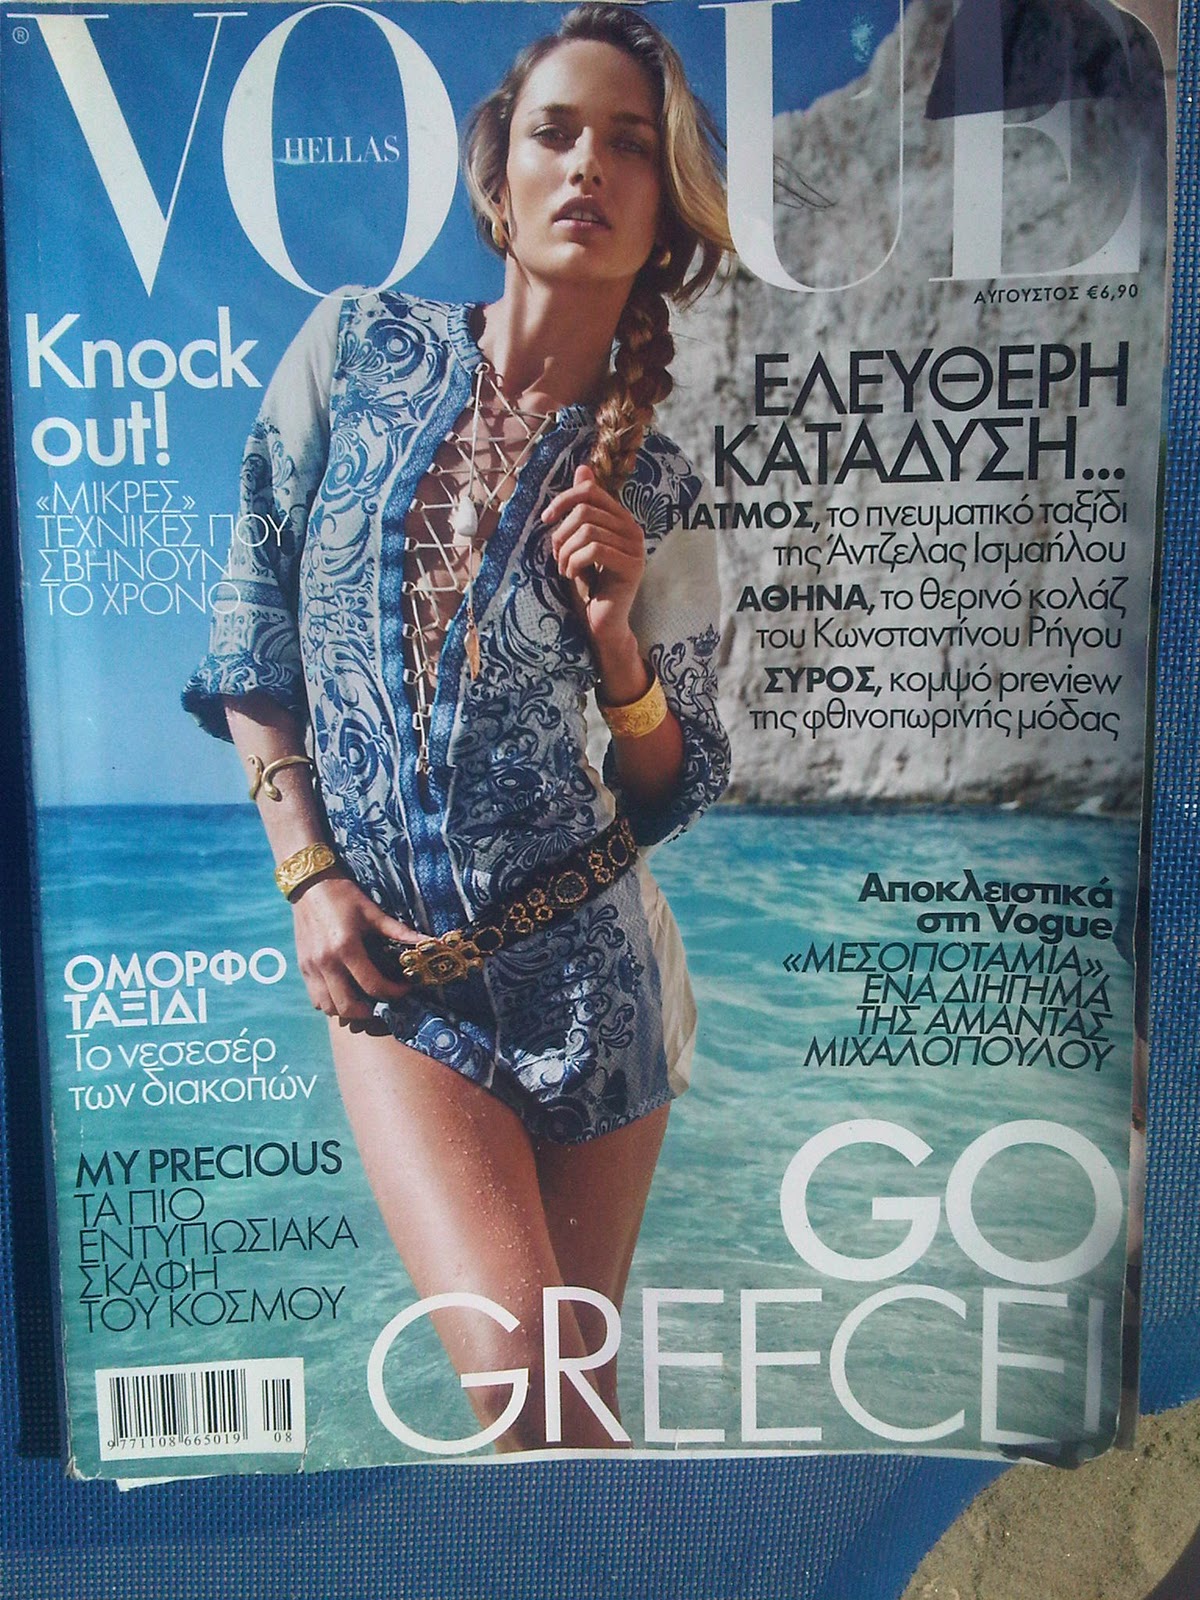 Razvigor :-): Greece: Baroque In Vogue Again – Literally